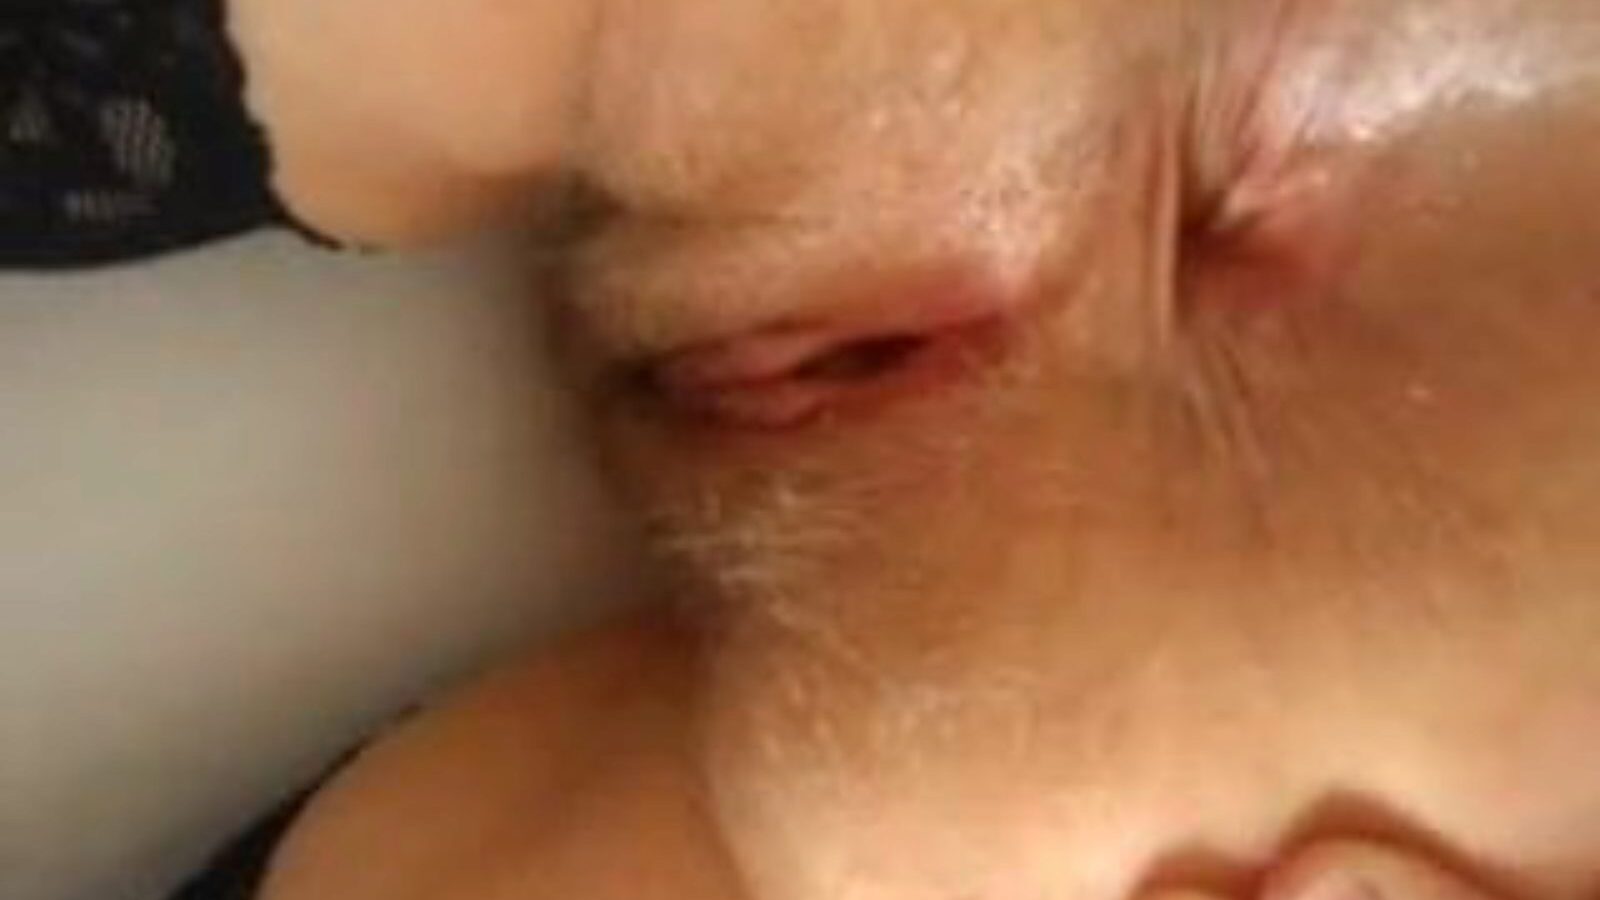 spread ass: spread open & mobile ass porn video - xhamster se spread ass tube bang-out filmscene gratis på xhamster, med den forbløffende flok af spread open mobile ass & open asshole porno episode sekvenser